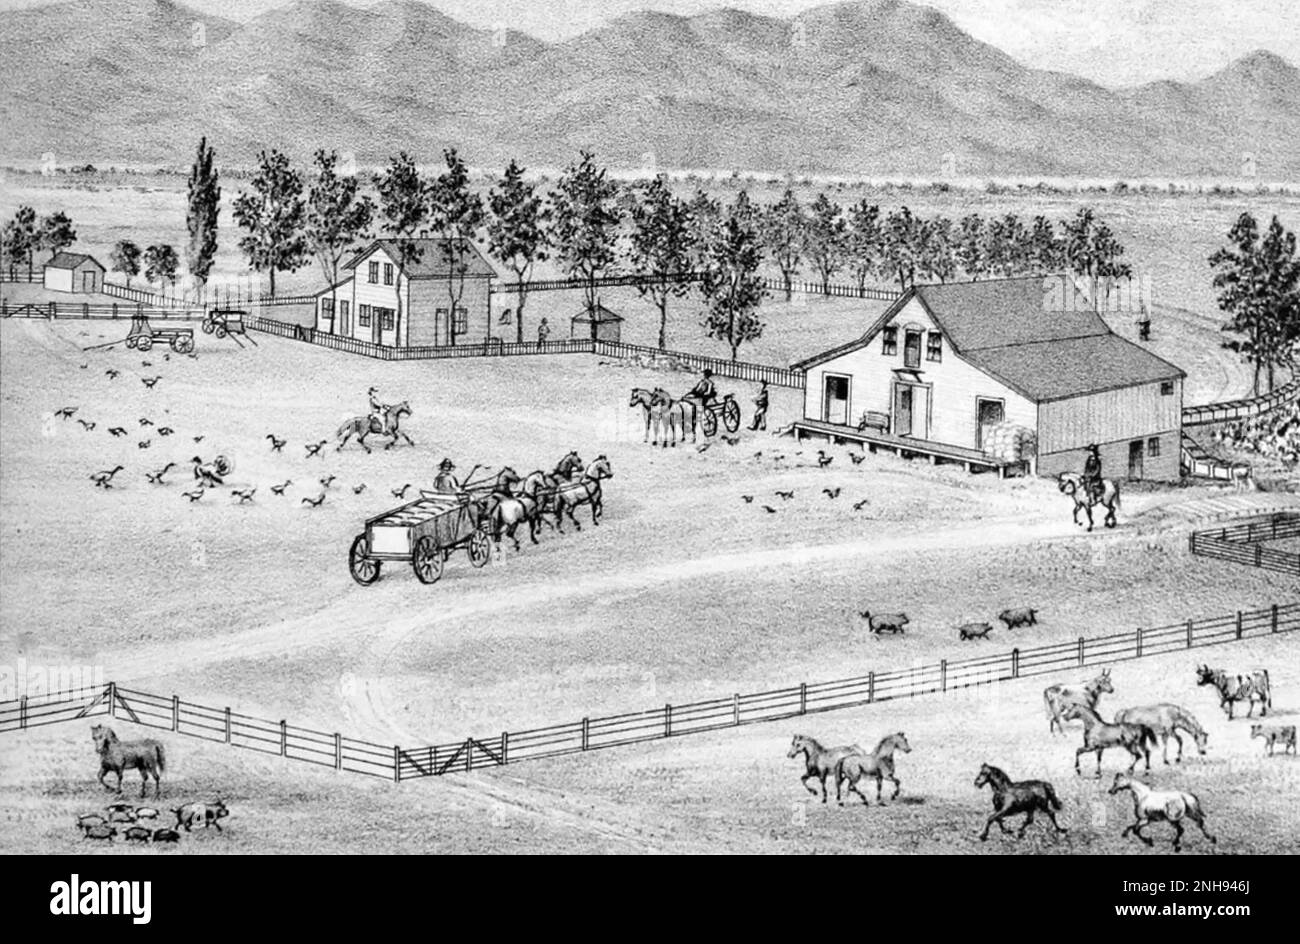 Un rancho de colonos en el oeste americano. Granja de W. R. Lee, Condado de Esmeralda, Mason Valley, Nevada. Ilustración de Myron Angel, 1881./n Foto de stock